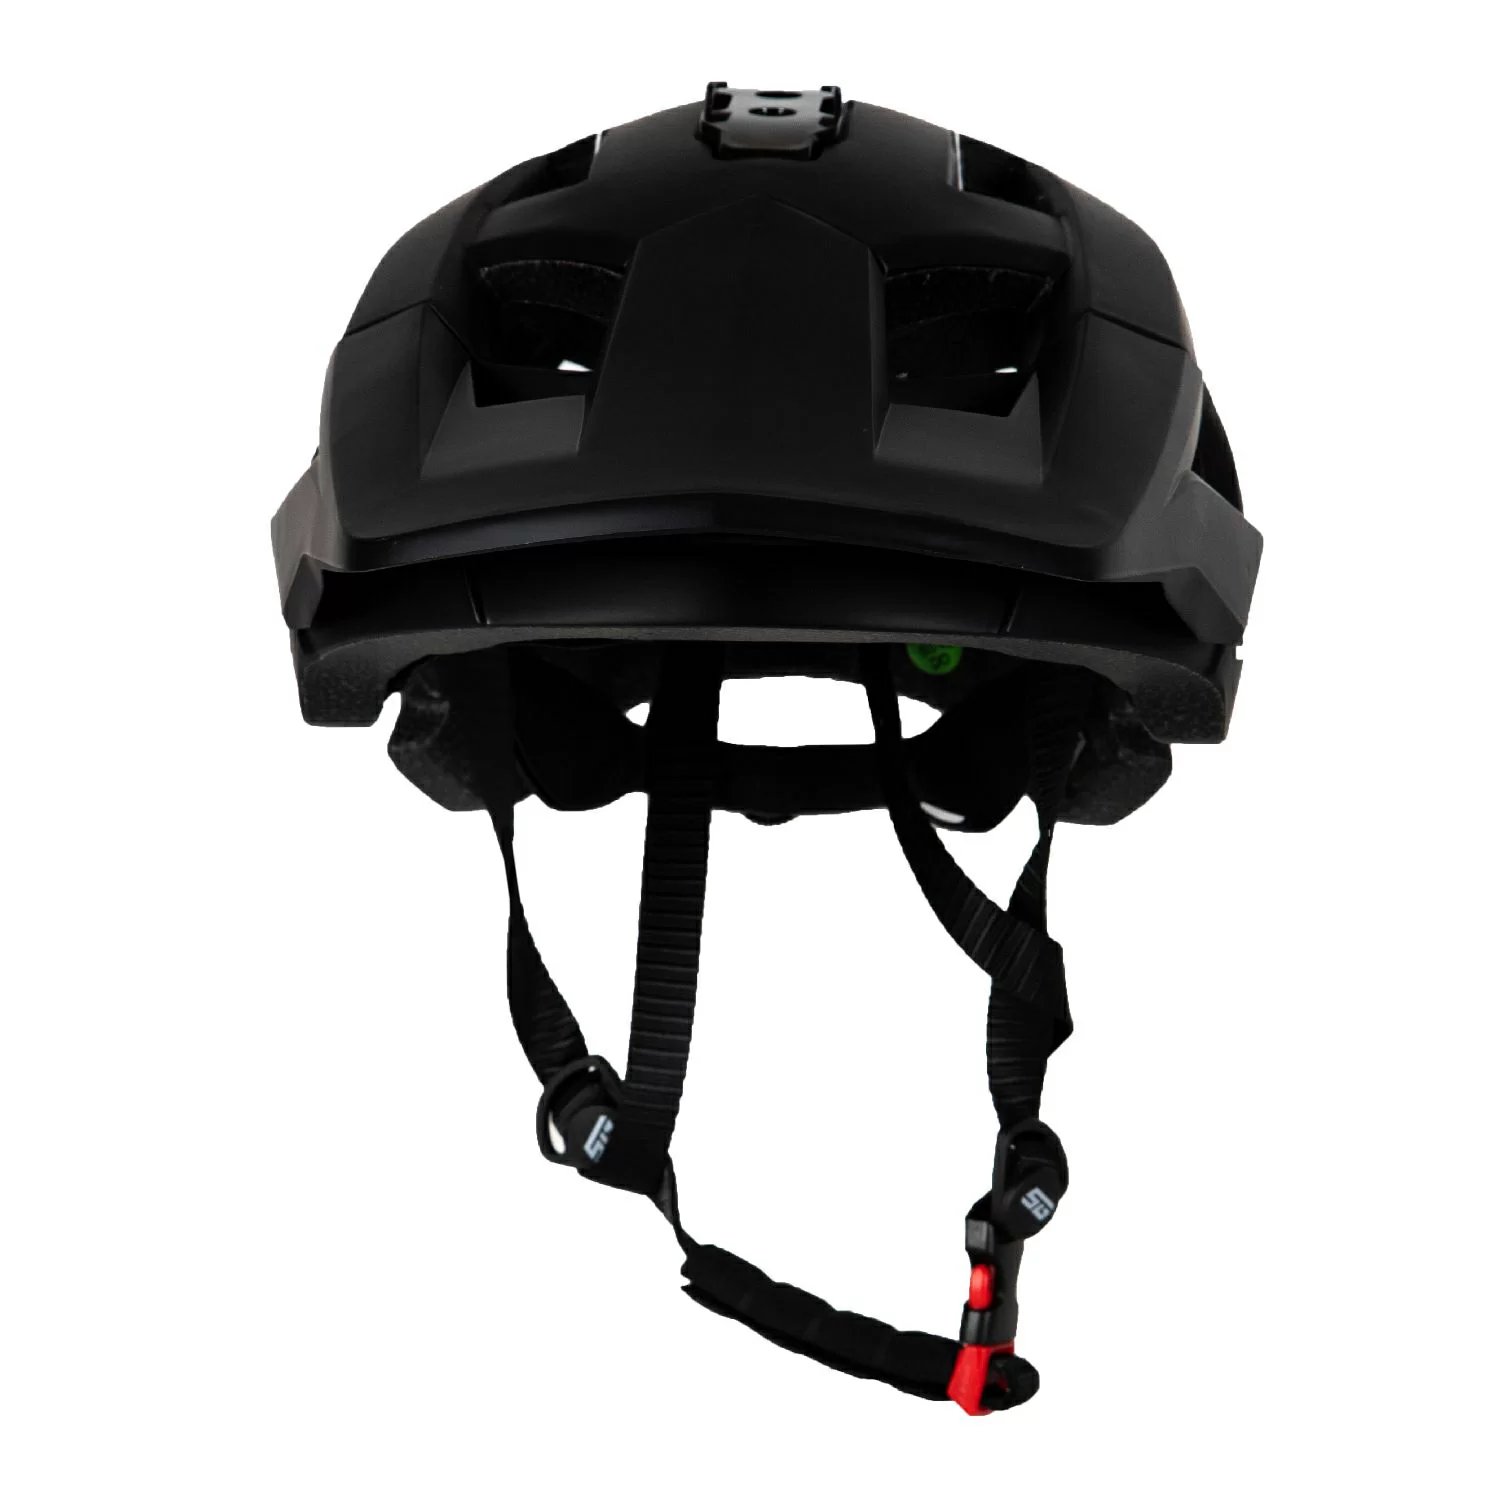 Реальное фото Шлем STG WT-085 с фонарем черный Х112429 от магазина СпортЕВ